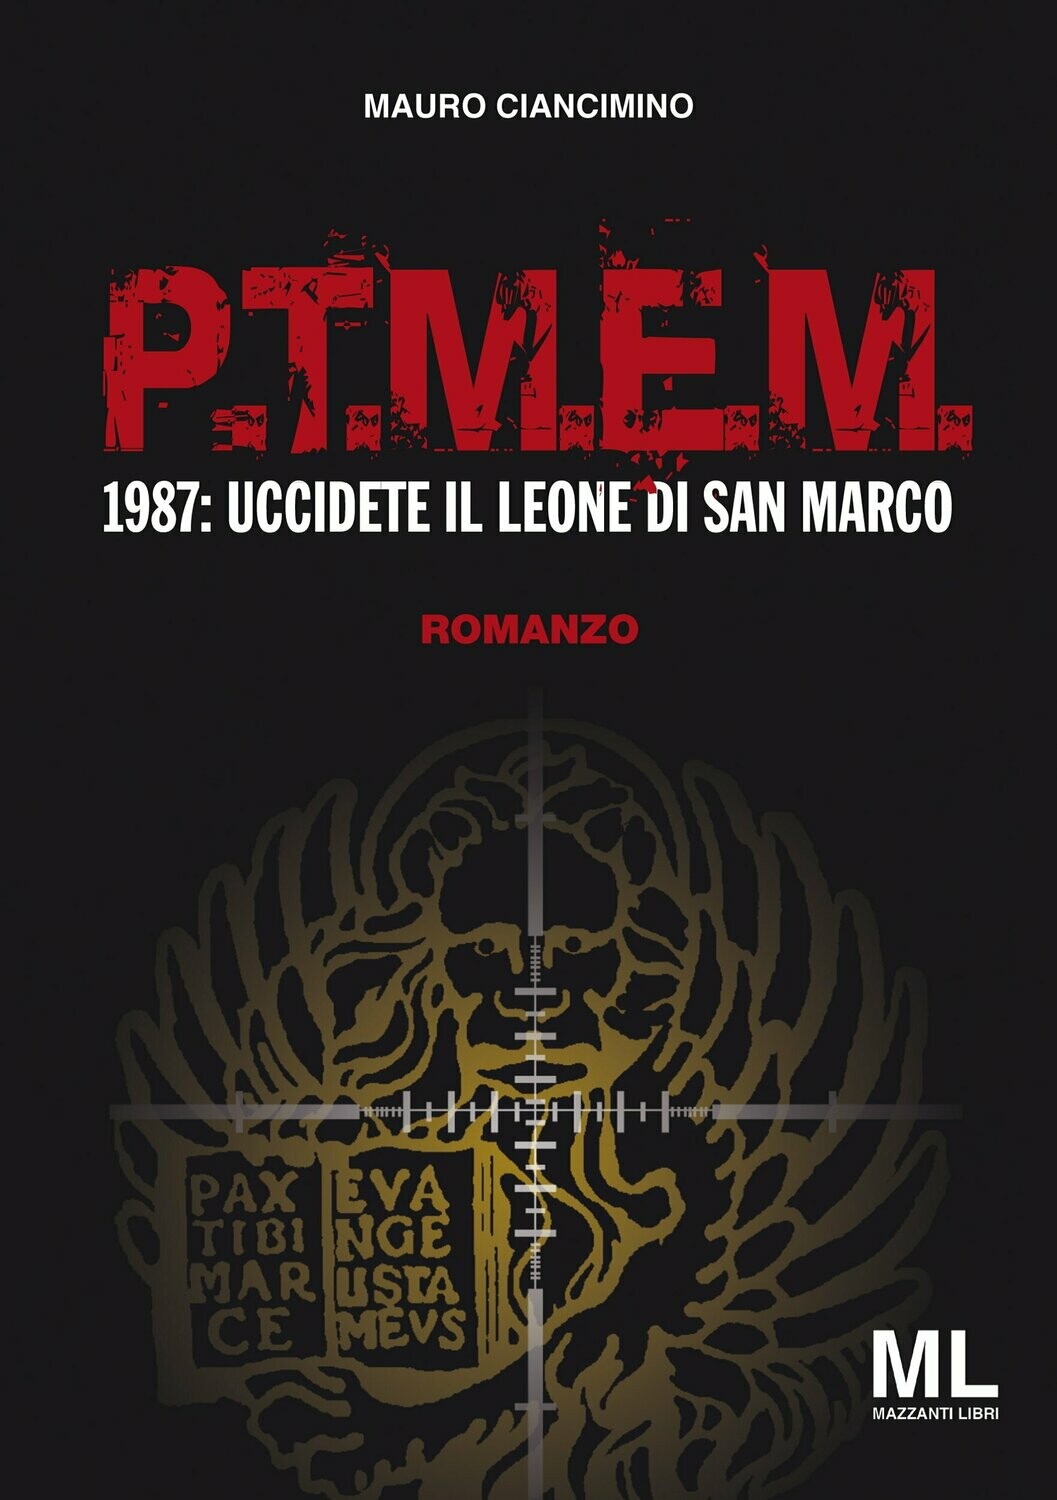 P. T. M. E. M. 1987 Uccidete il Leone di San Marco